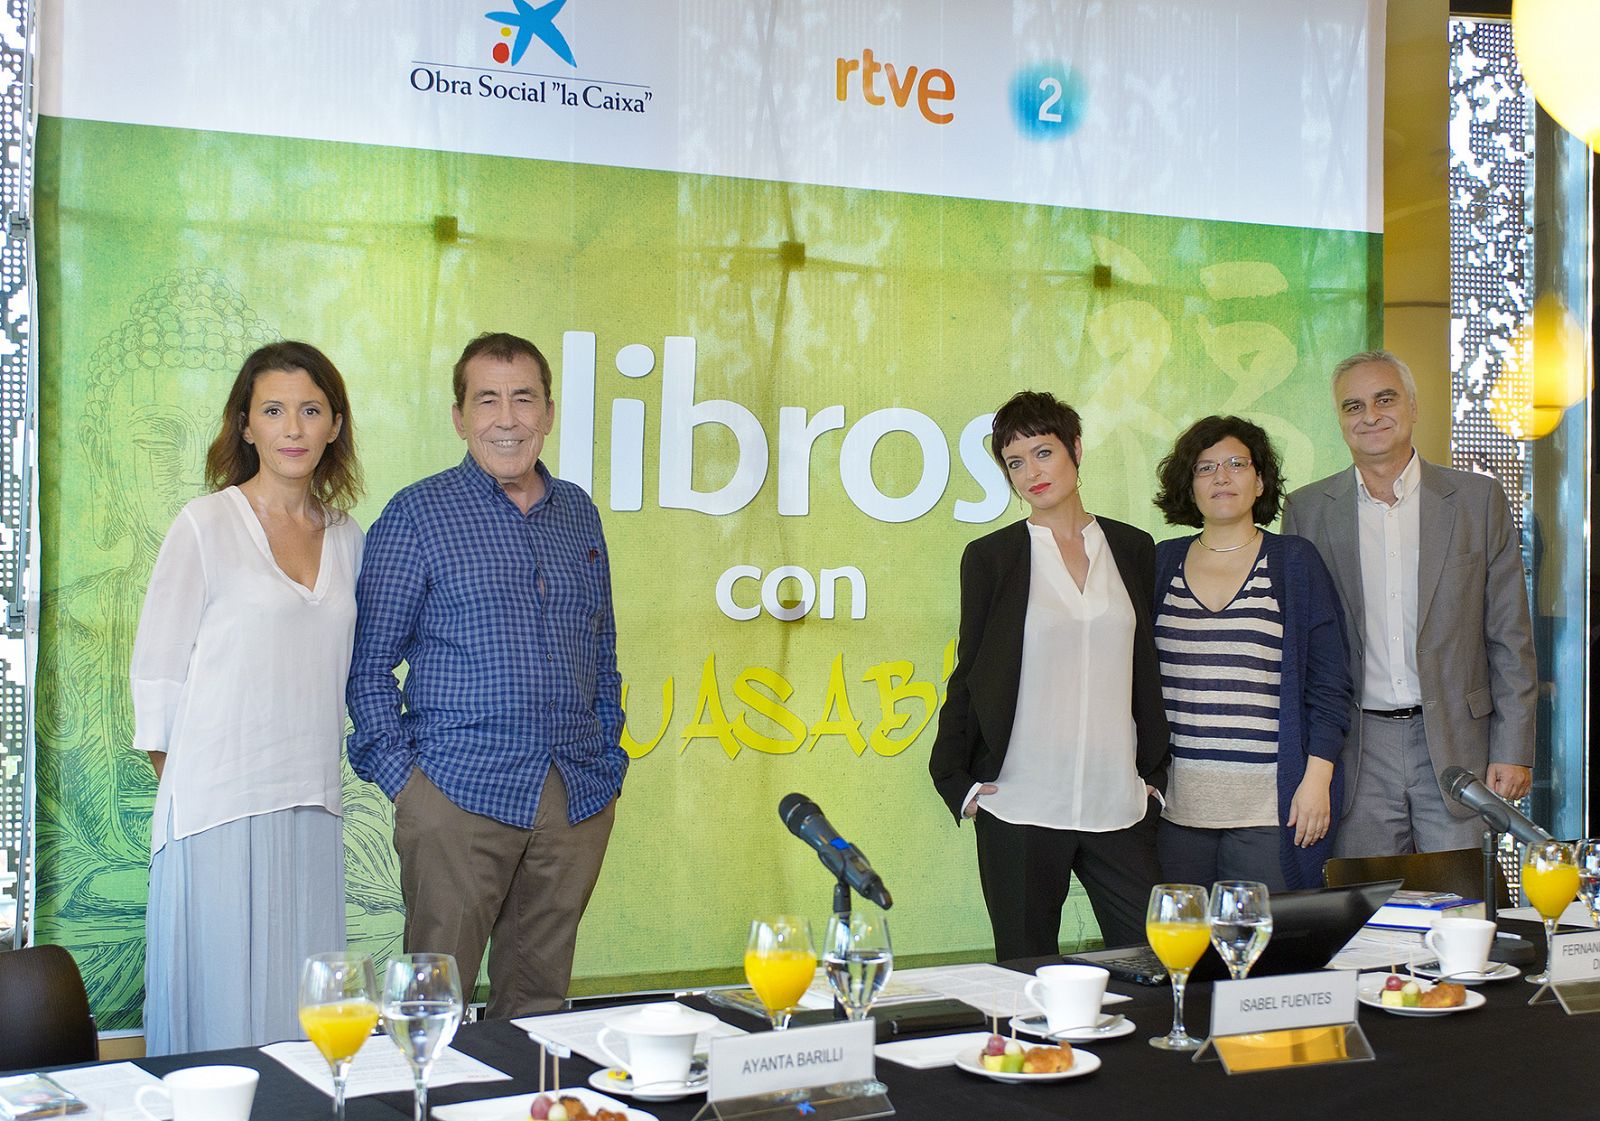 Ayanta Barilli, Sánchez Dragó, Anna Grau, Isabel Fuentes y Samuel Martín Mateos